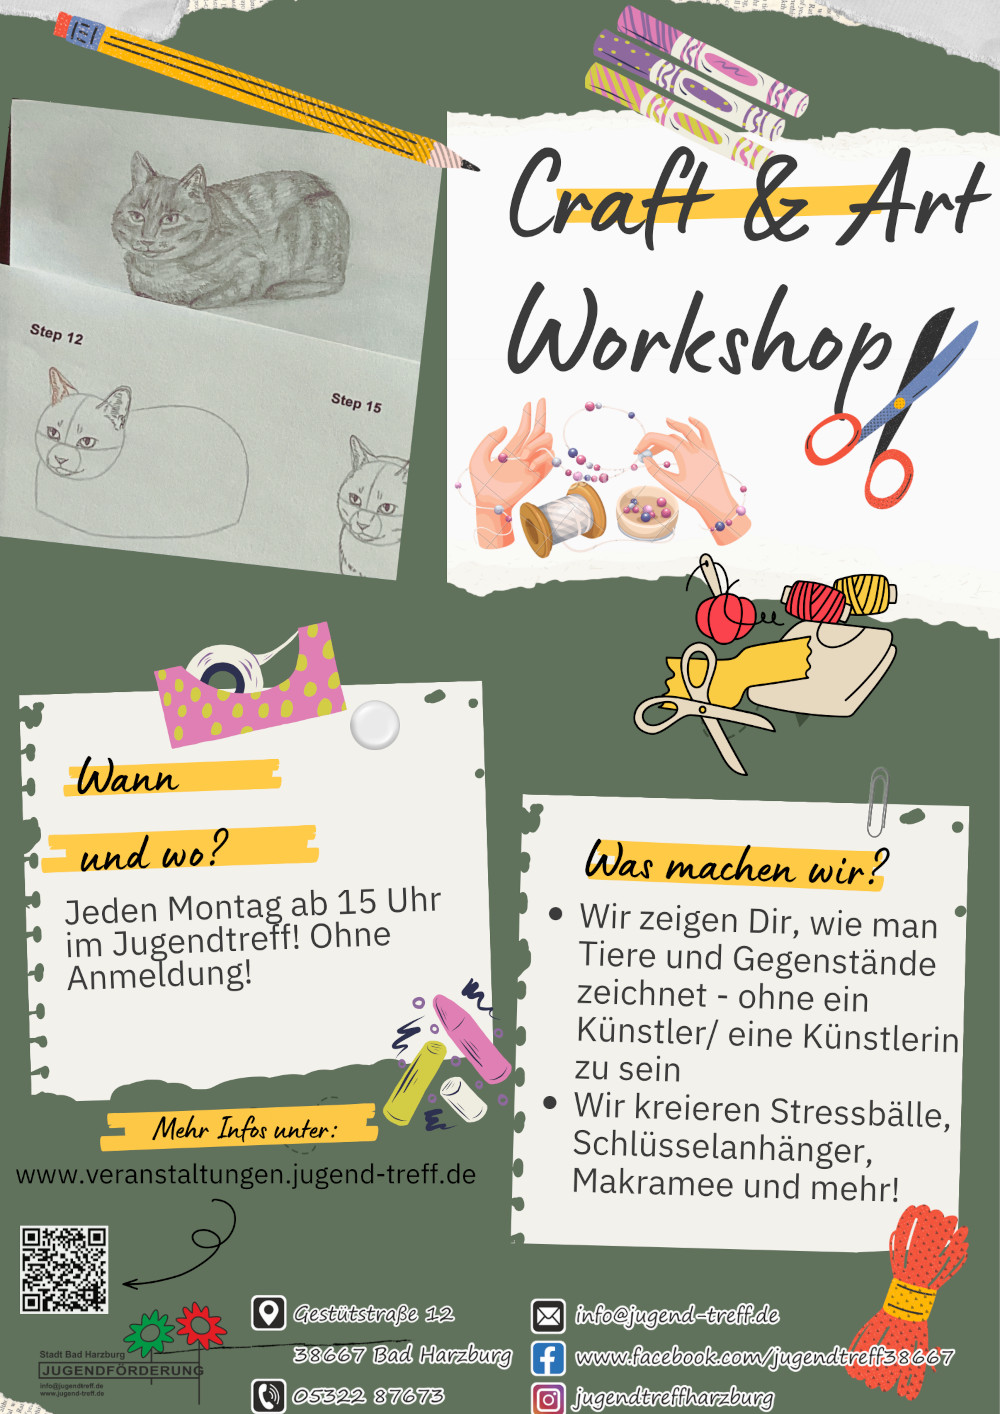 Craft & Art Workshop